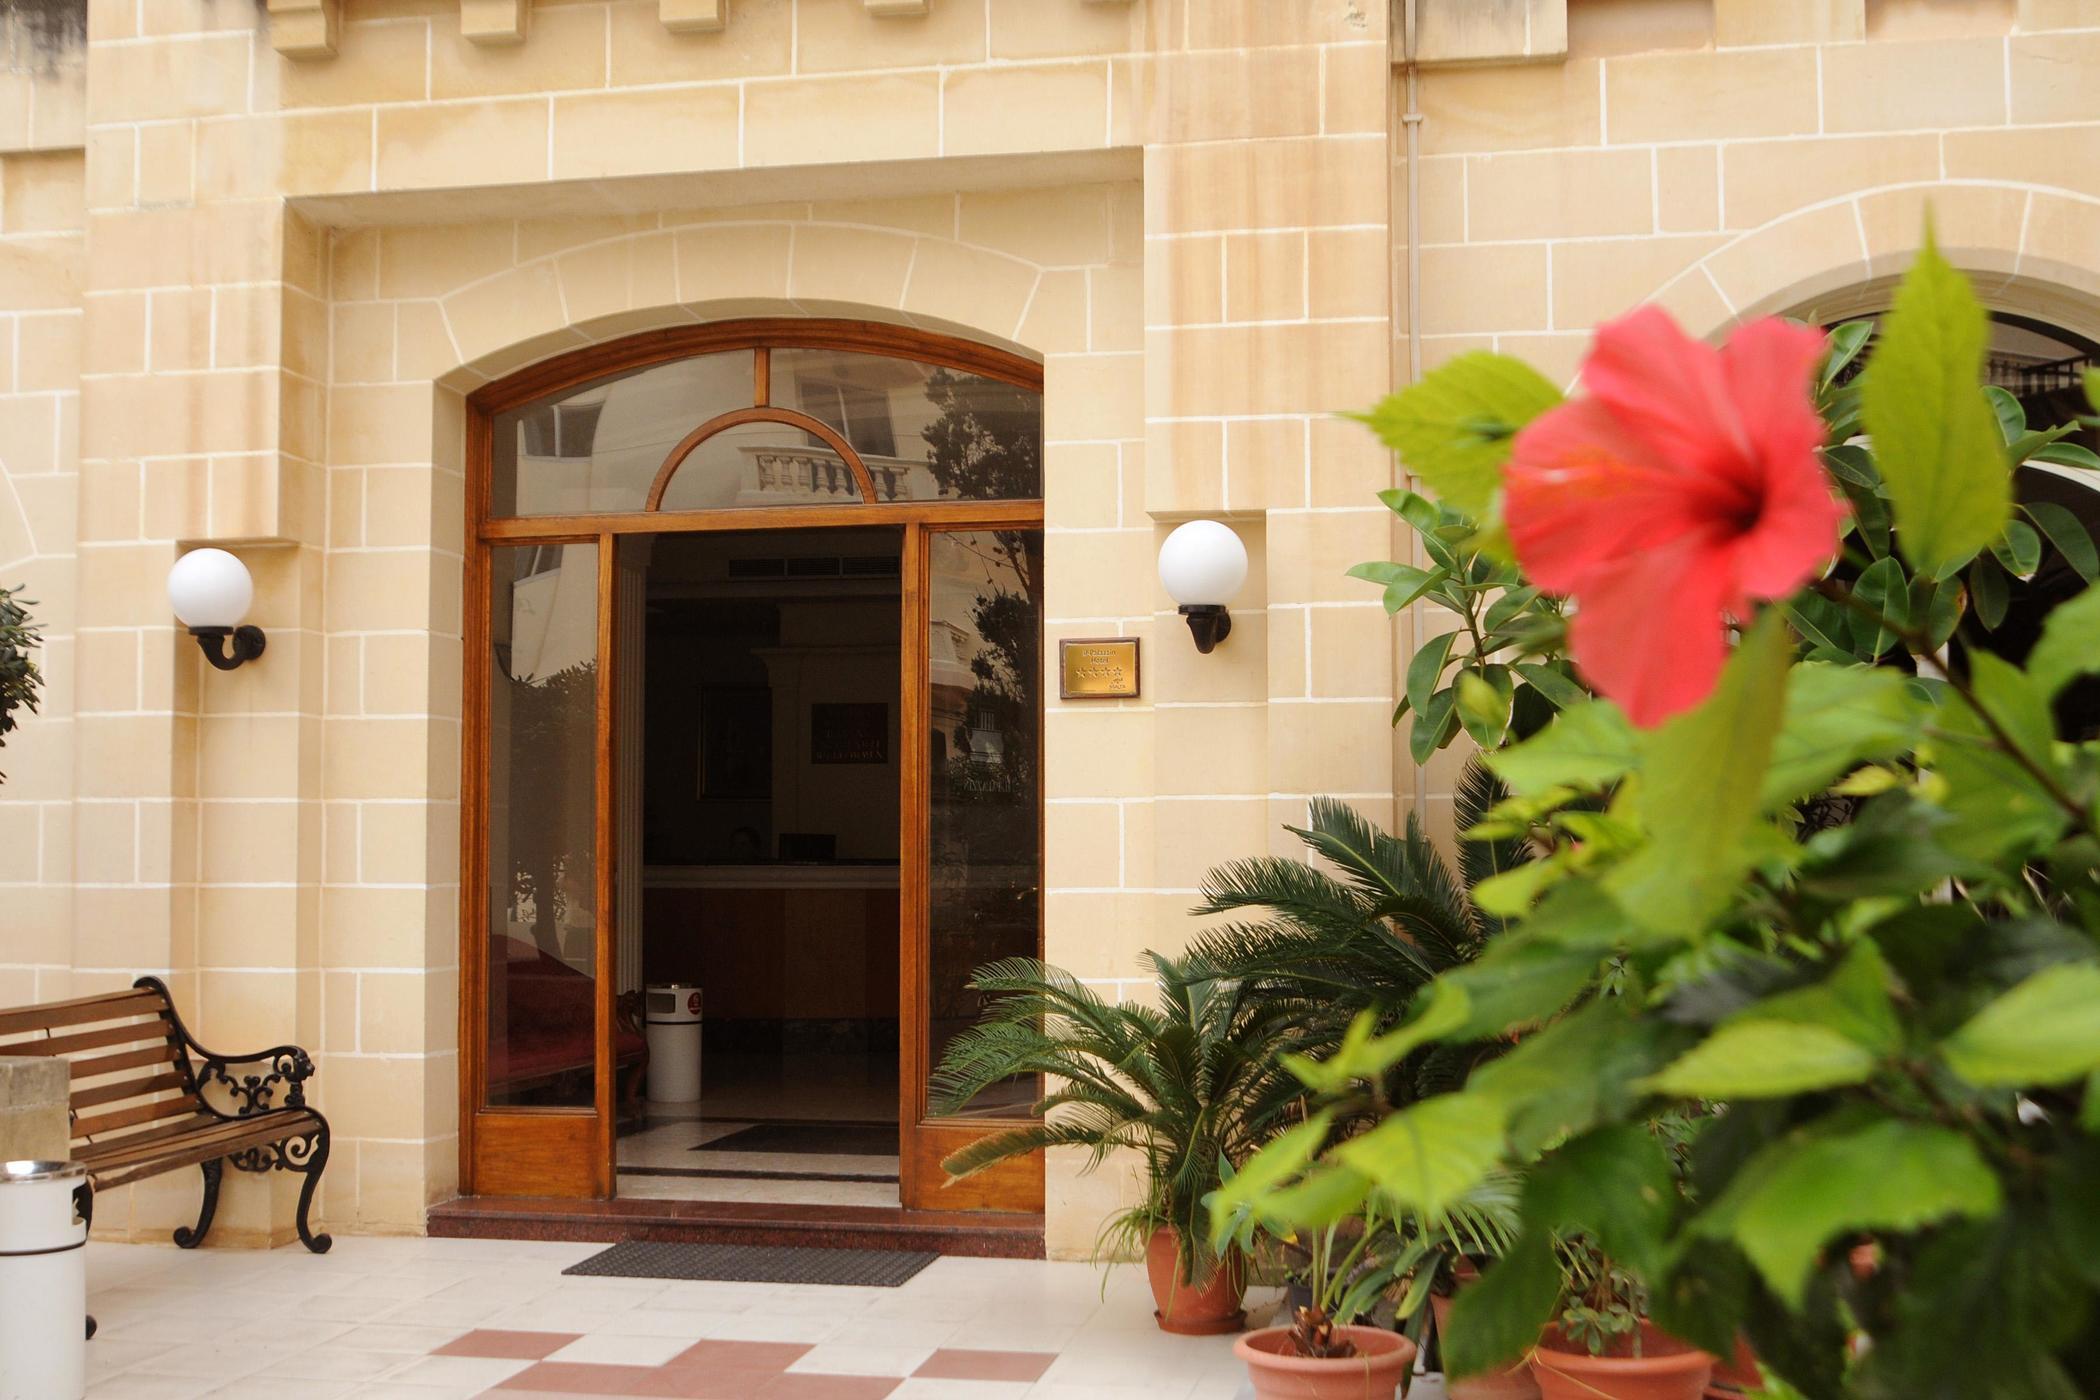 Il Palazzin Hotel San Pawl il-Baħar Zewnętrze zdjęcie